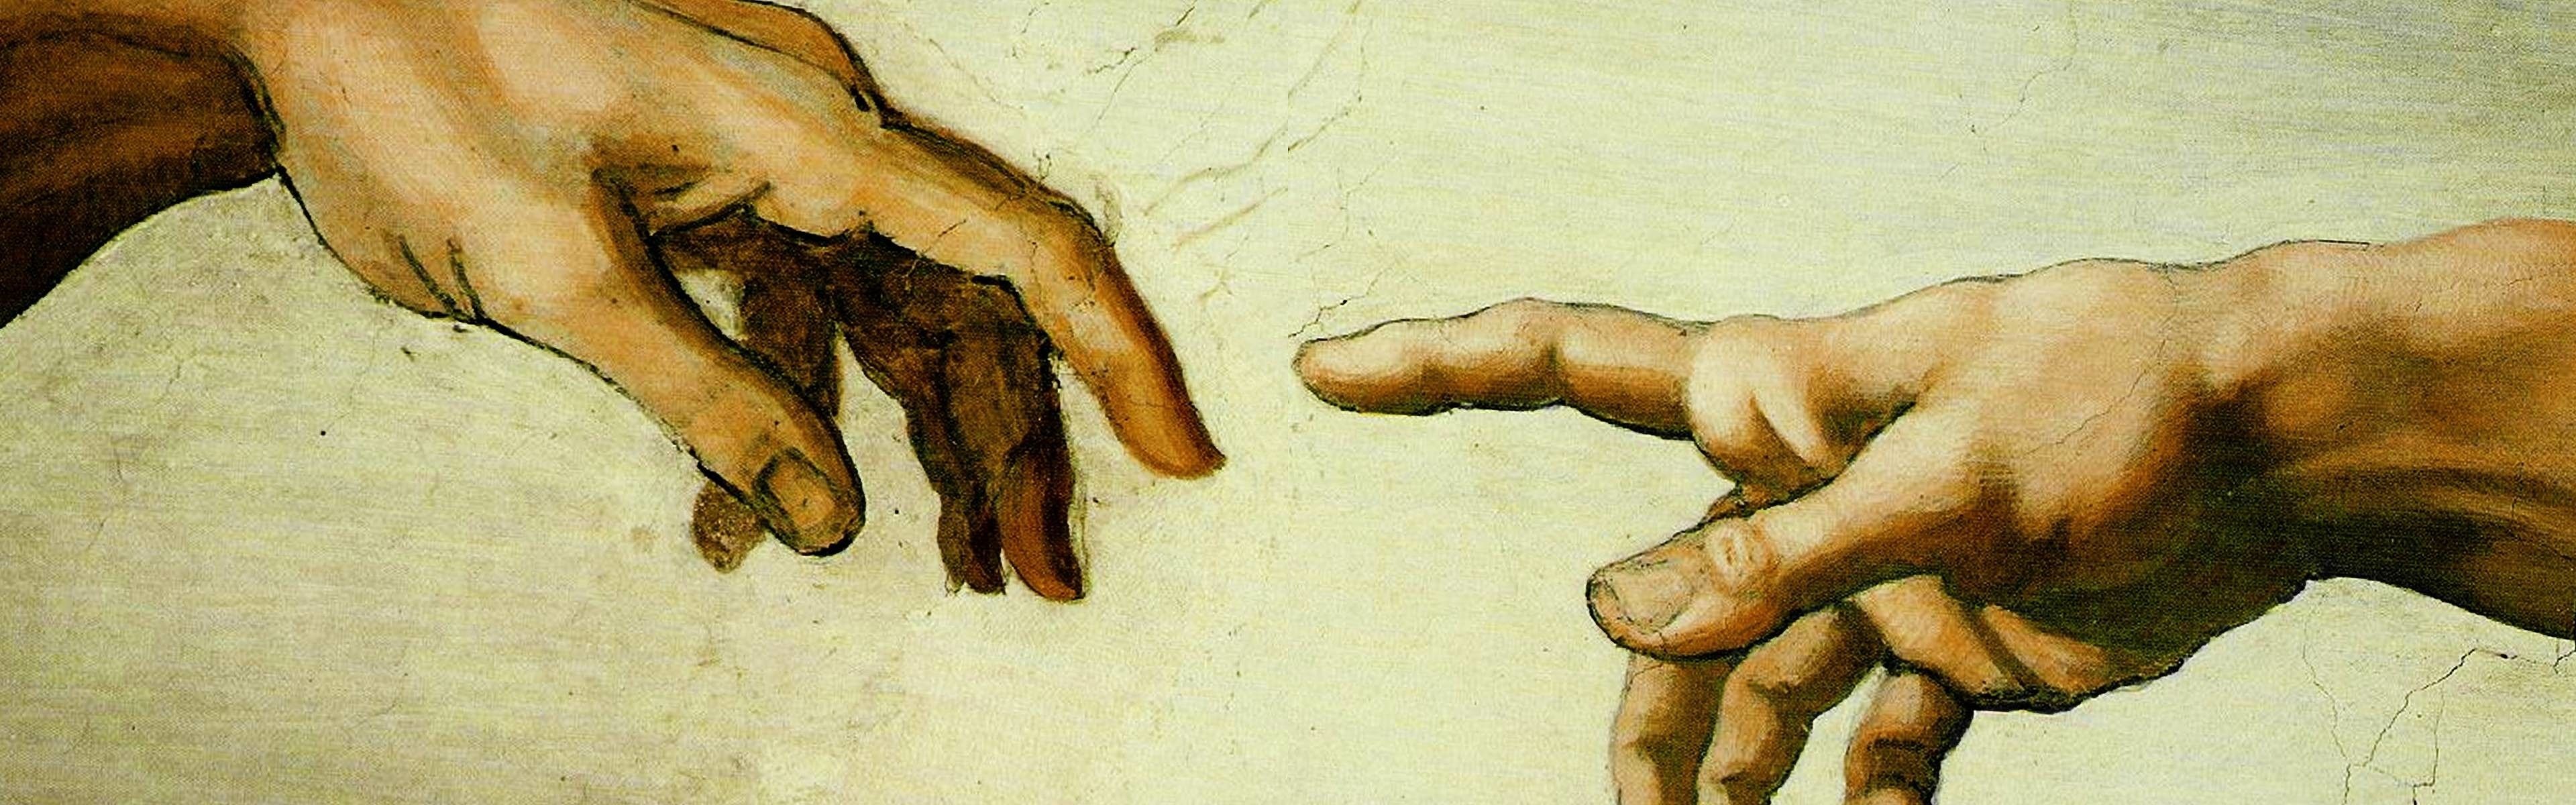 Michelangelo, Creation of Adam, 4K wallpapers, Backgrounds, 3840x1200 Dual Screen Desktop